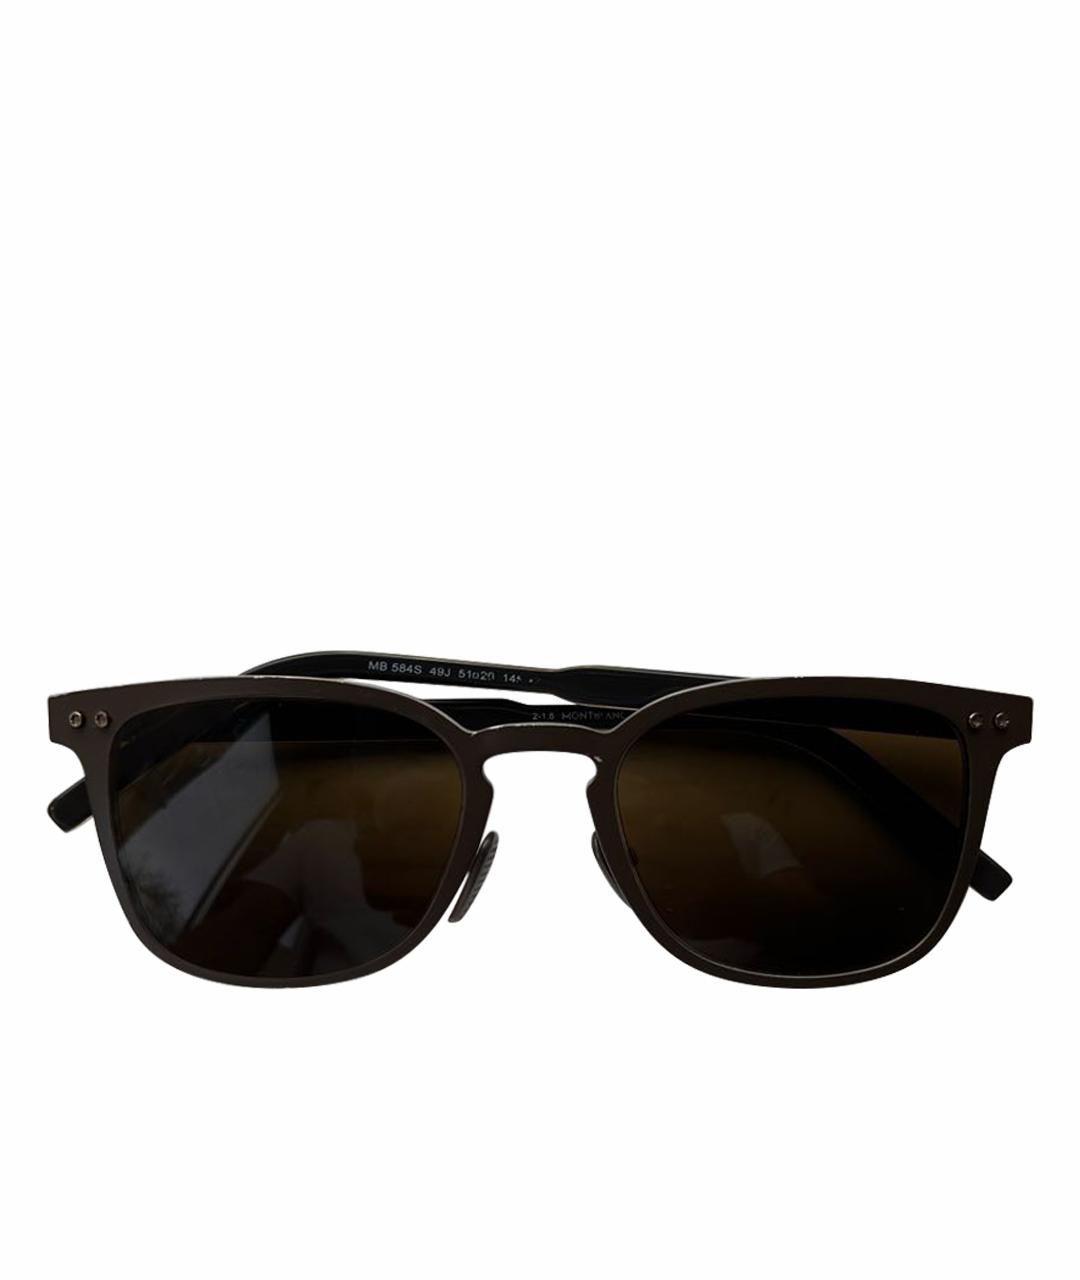 MONTBLANC Хаки металлические солнцезащитные очки, фото 1